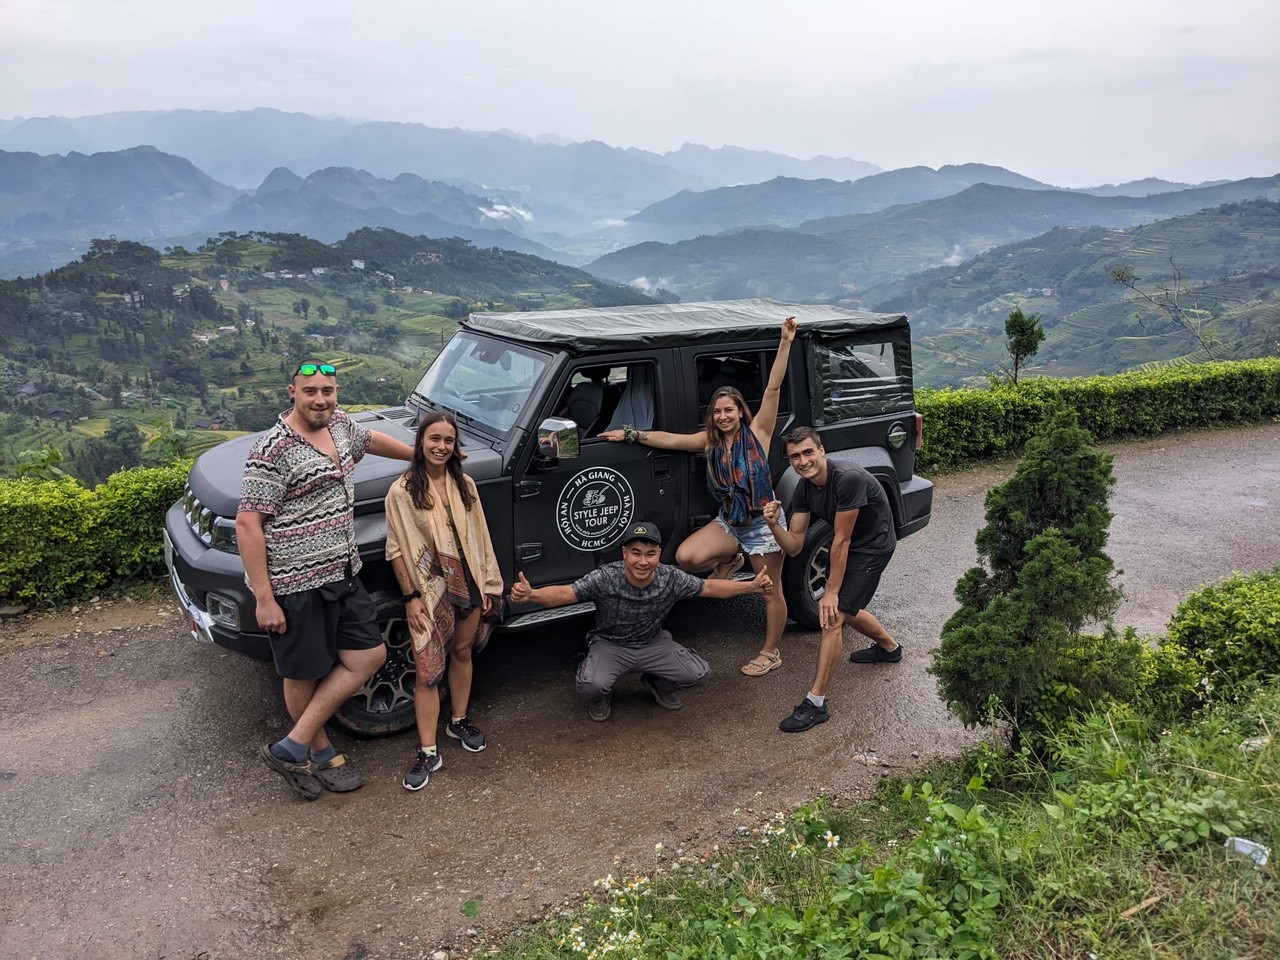 ha giang jeep tour